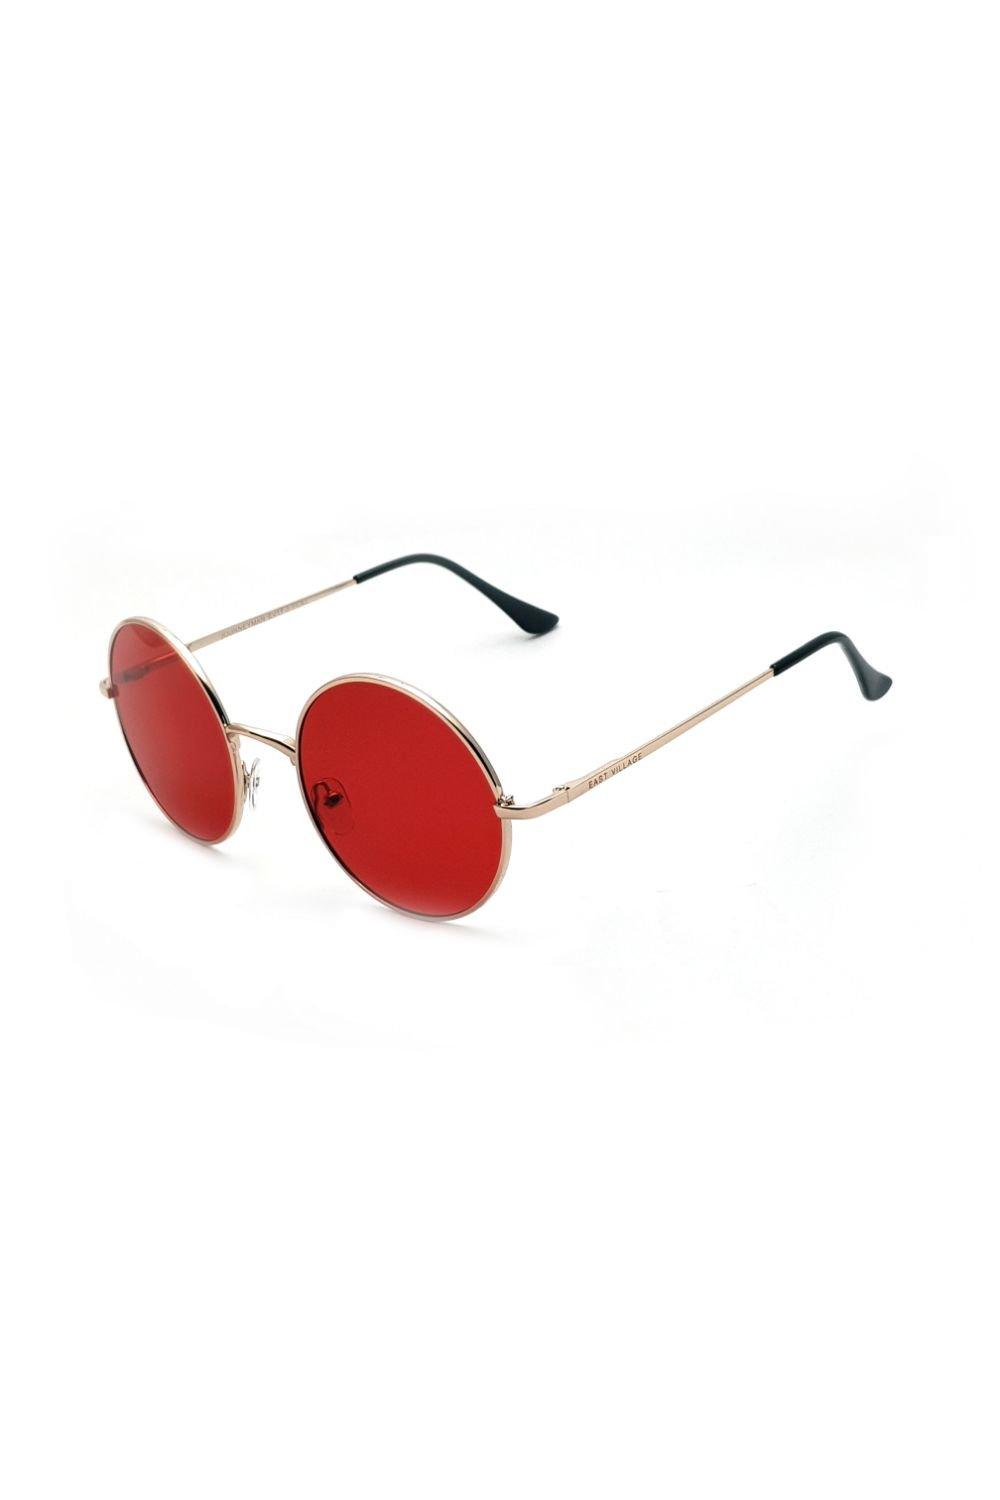 солнцезащитные очки авиаторы jordan east village черный Круглые солнцезащитные очки Journeyman East Village, серебро